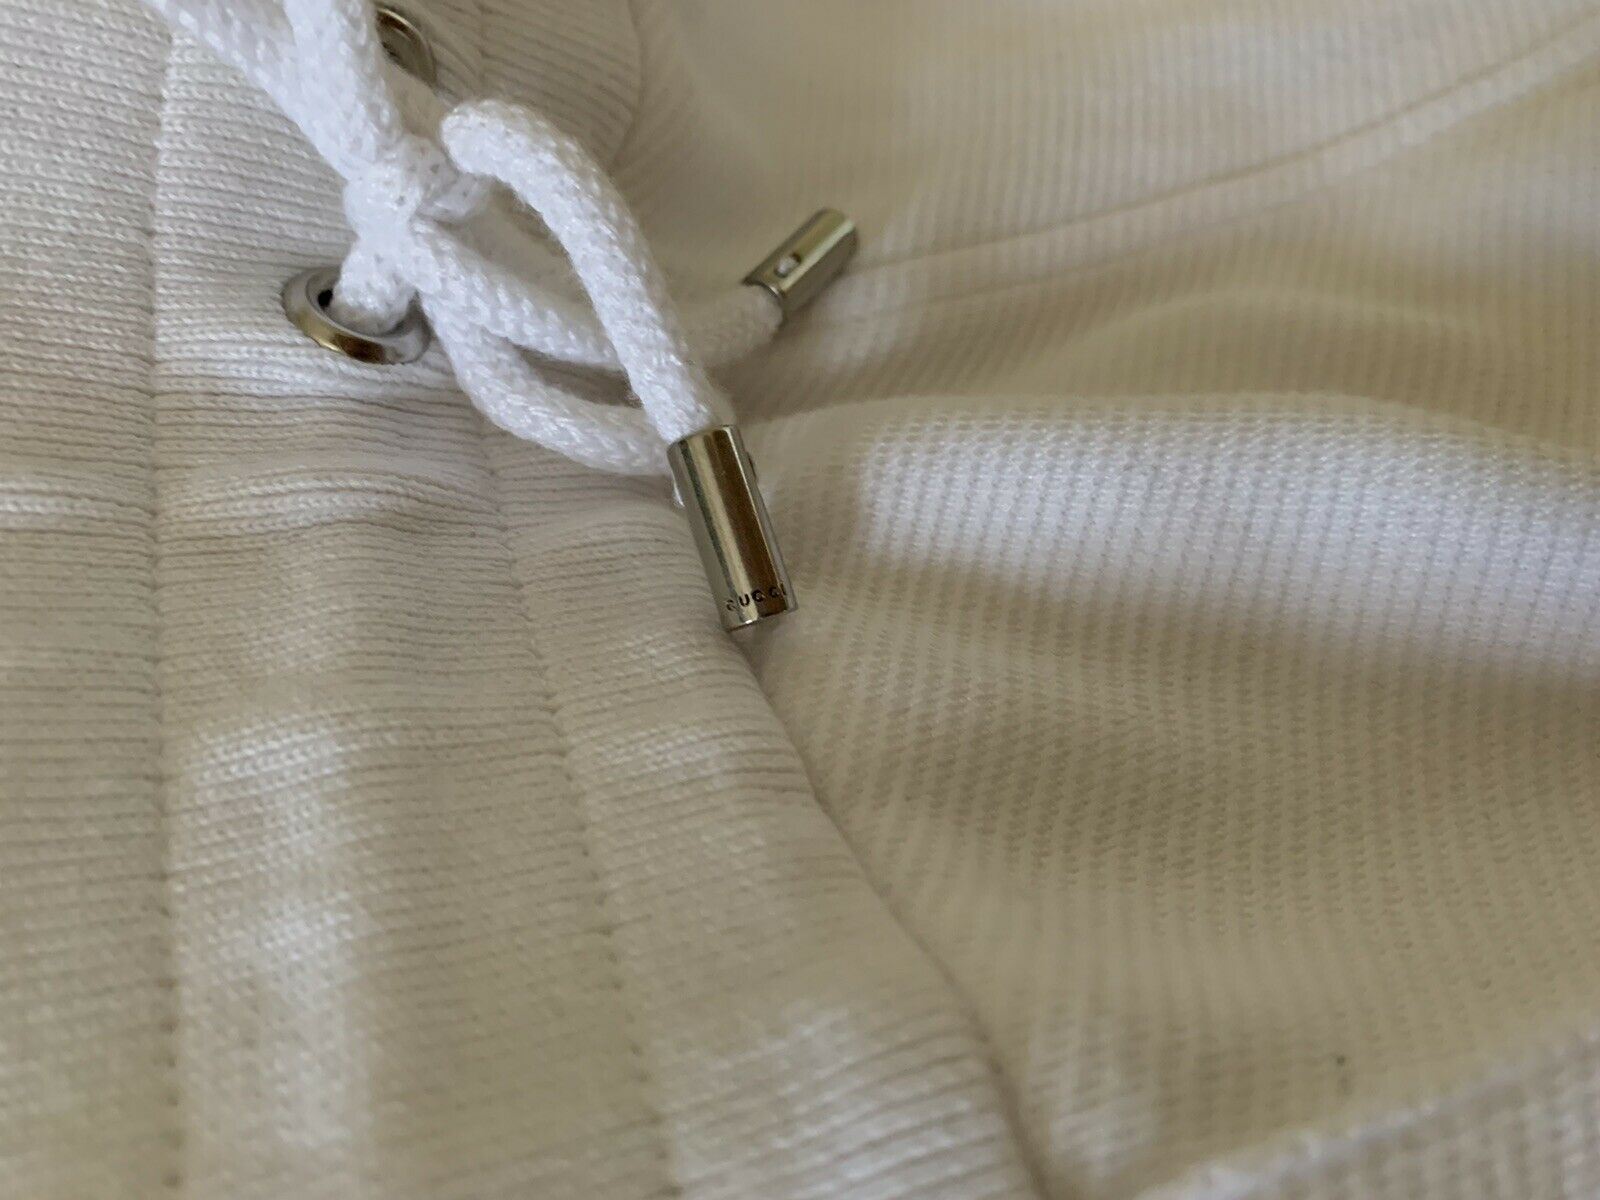 Мужские спортивные штаны Gucci белого цвета, размер XXL, 1245 долларов, сделано в Италии.